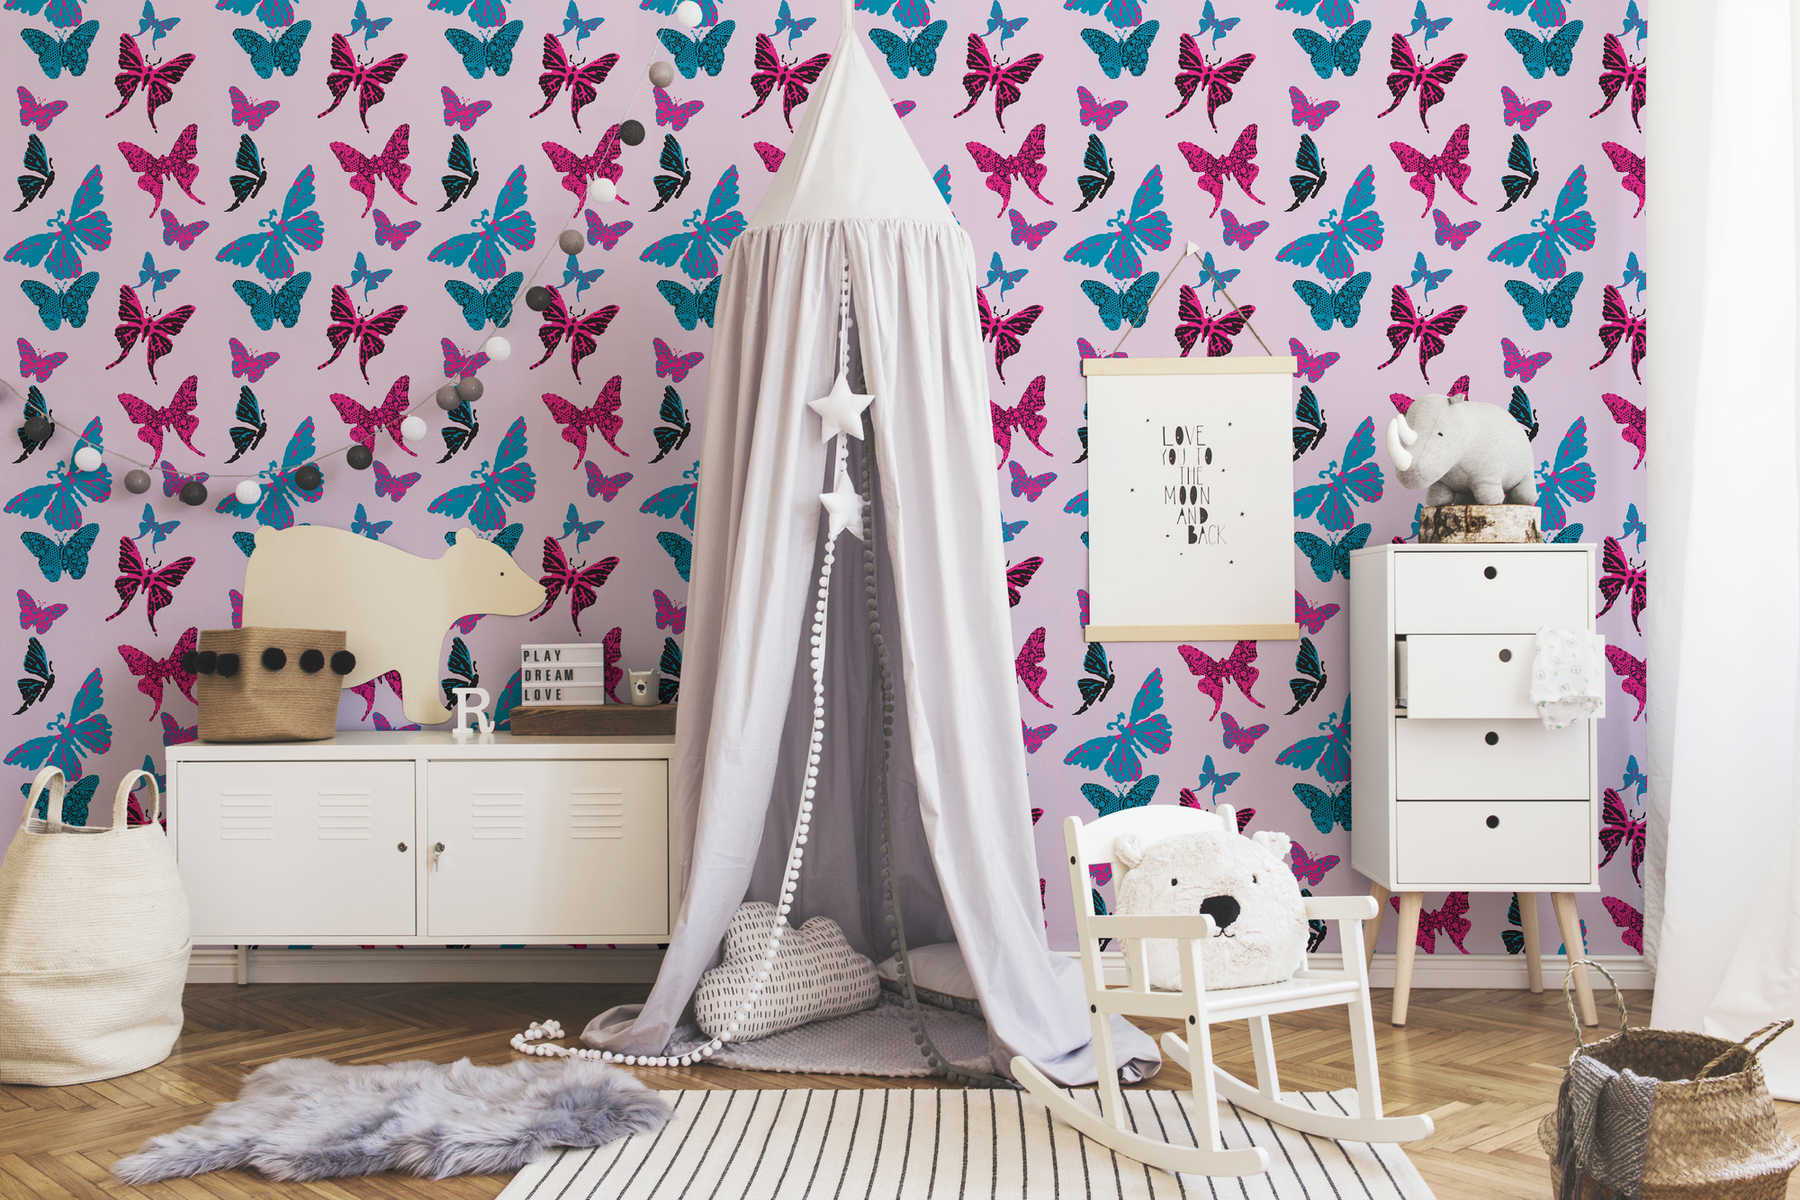             Vlinderbehang in grafisch ontwerp voor kinderkamer - paars, blauw
        